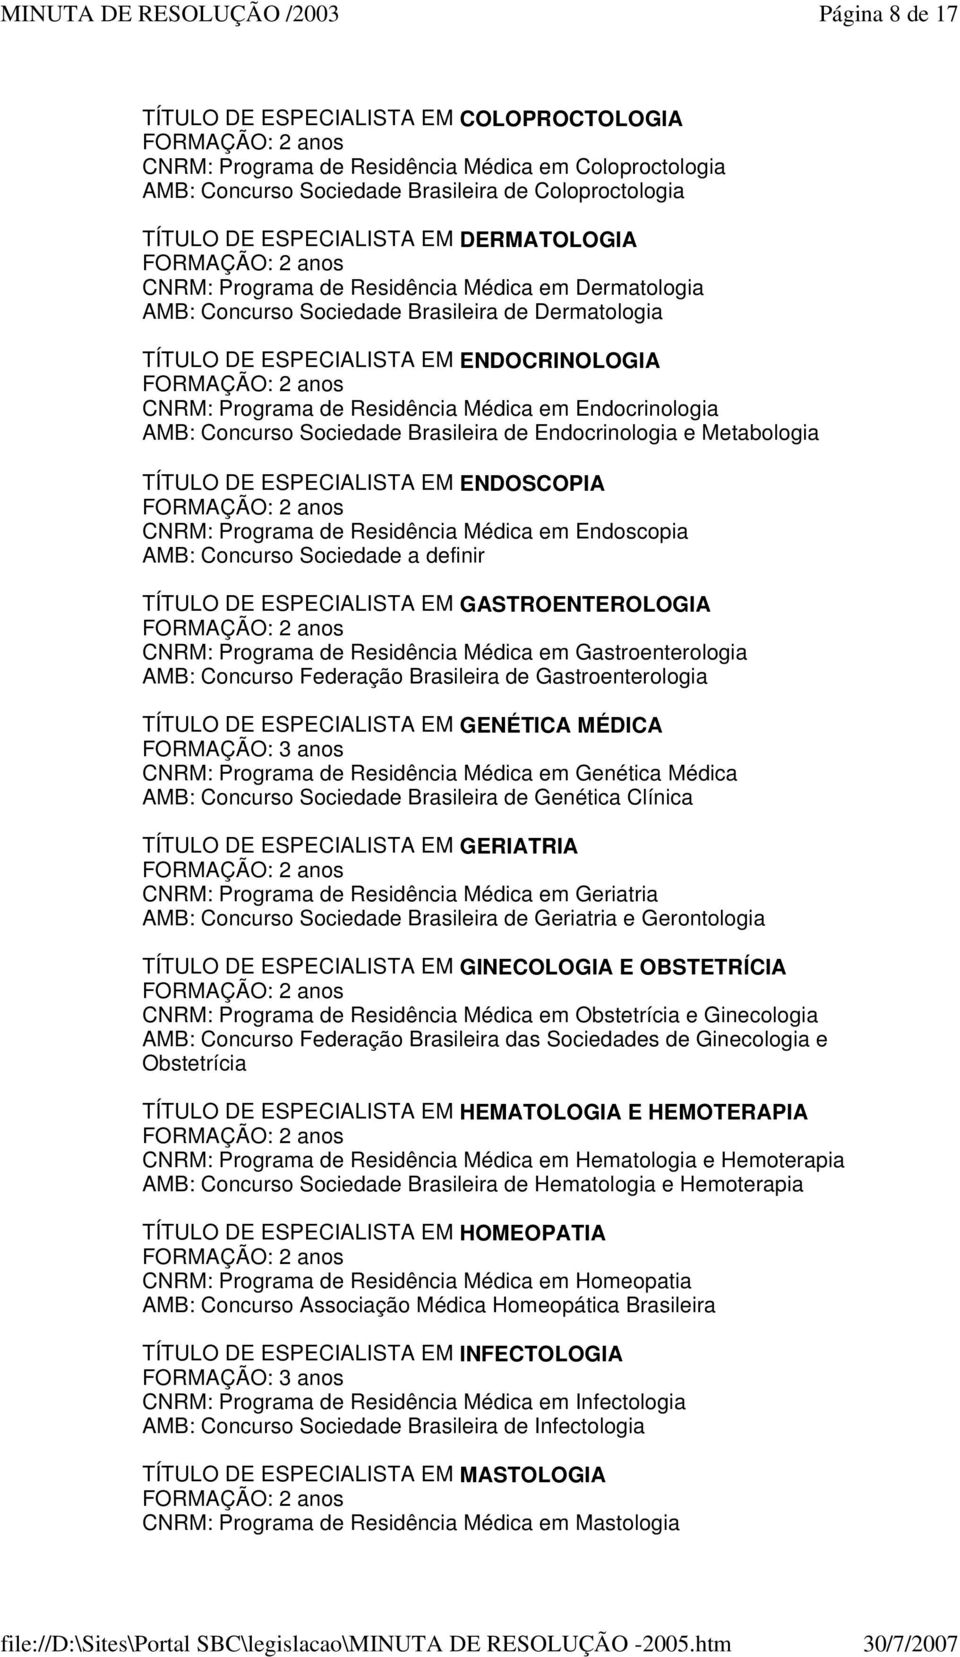 Endocrinologia AMB: Concurso Sociedade Brasileira de Endocrinologia e Metabologia TÍTULO DE ESPECIALISTA EM ENDOSCOPIA CNRM: Programa de Residência Médica em Endoscopia AMB: Concurso Sociedade a